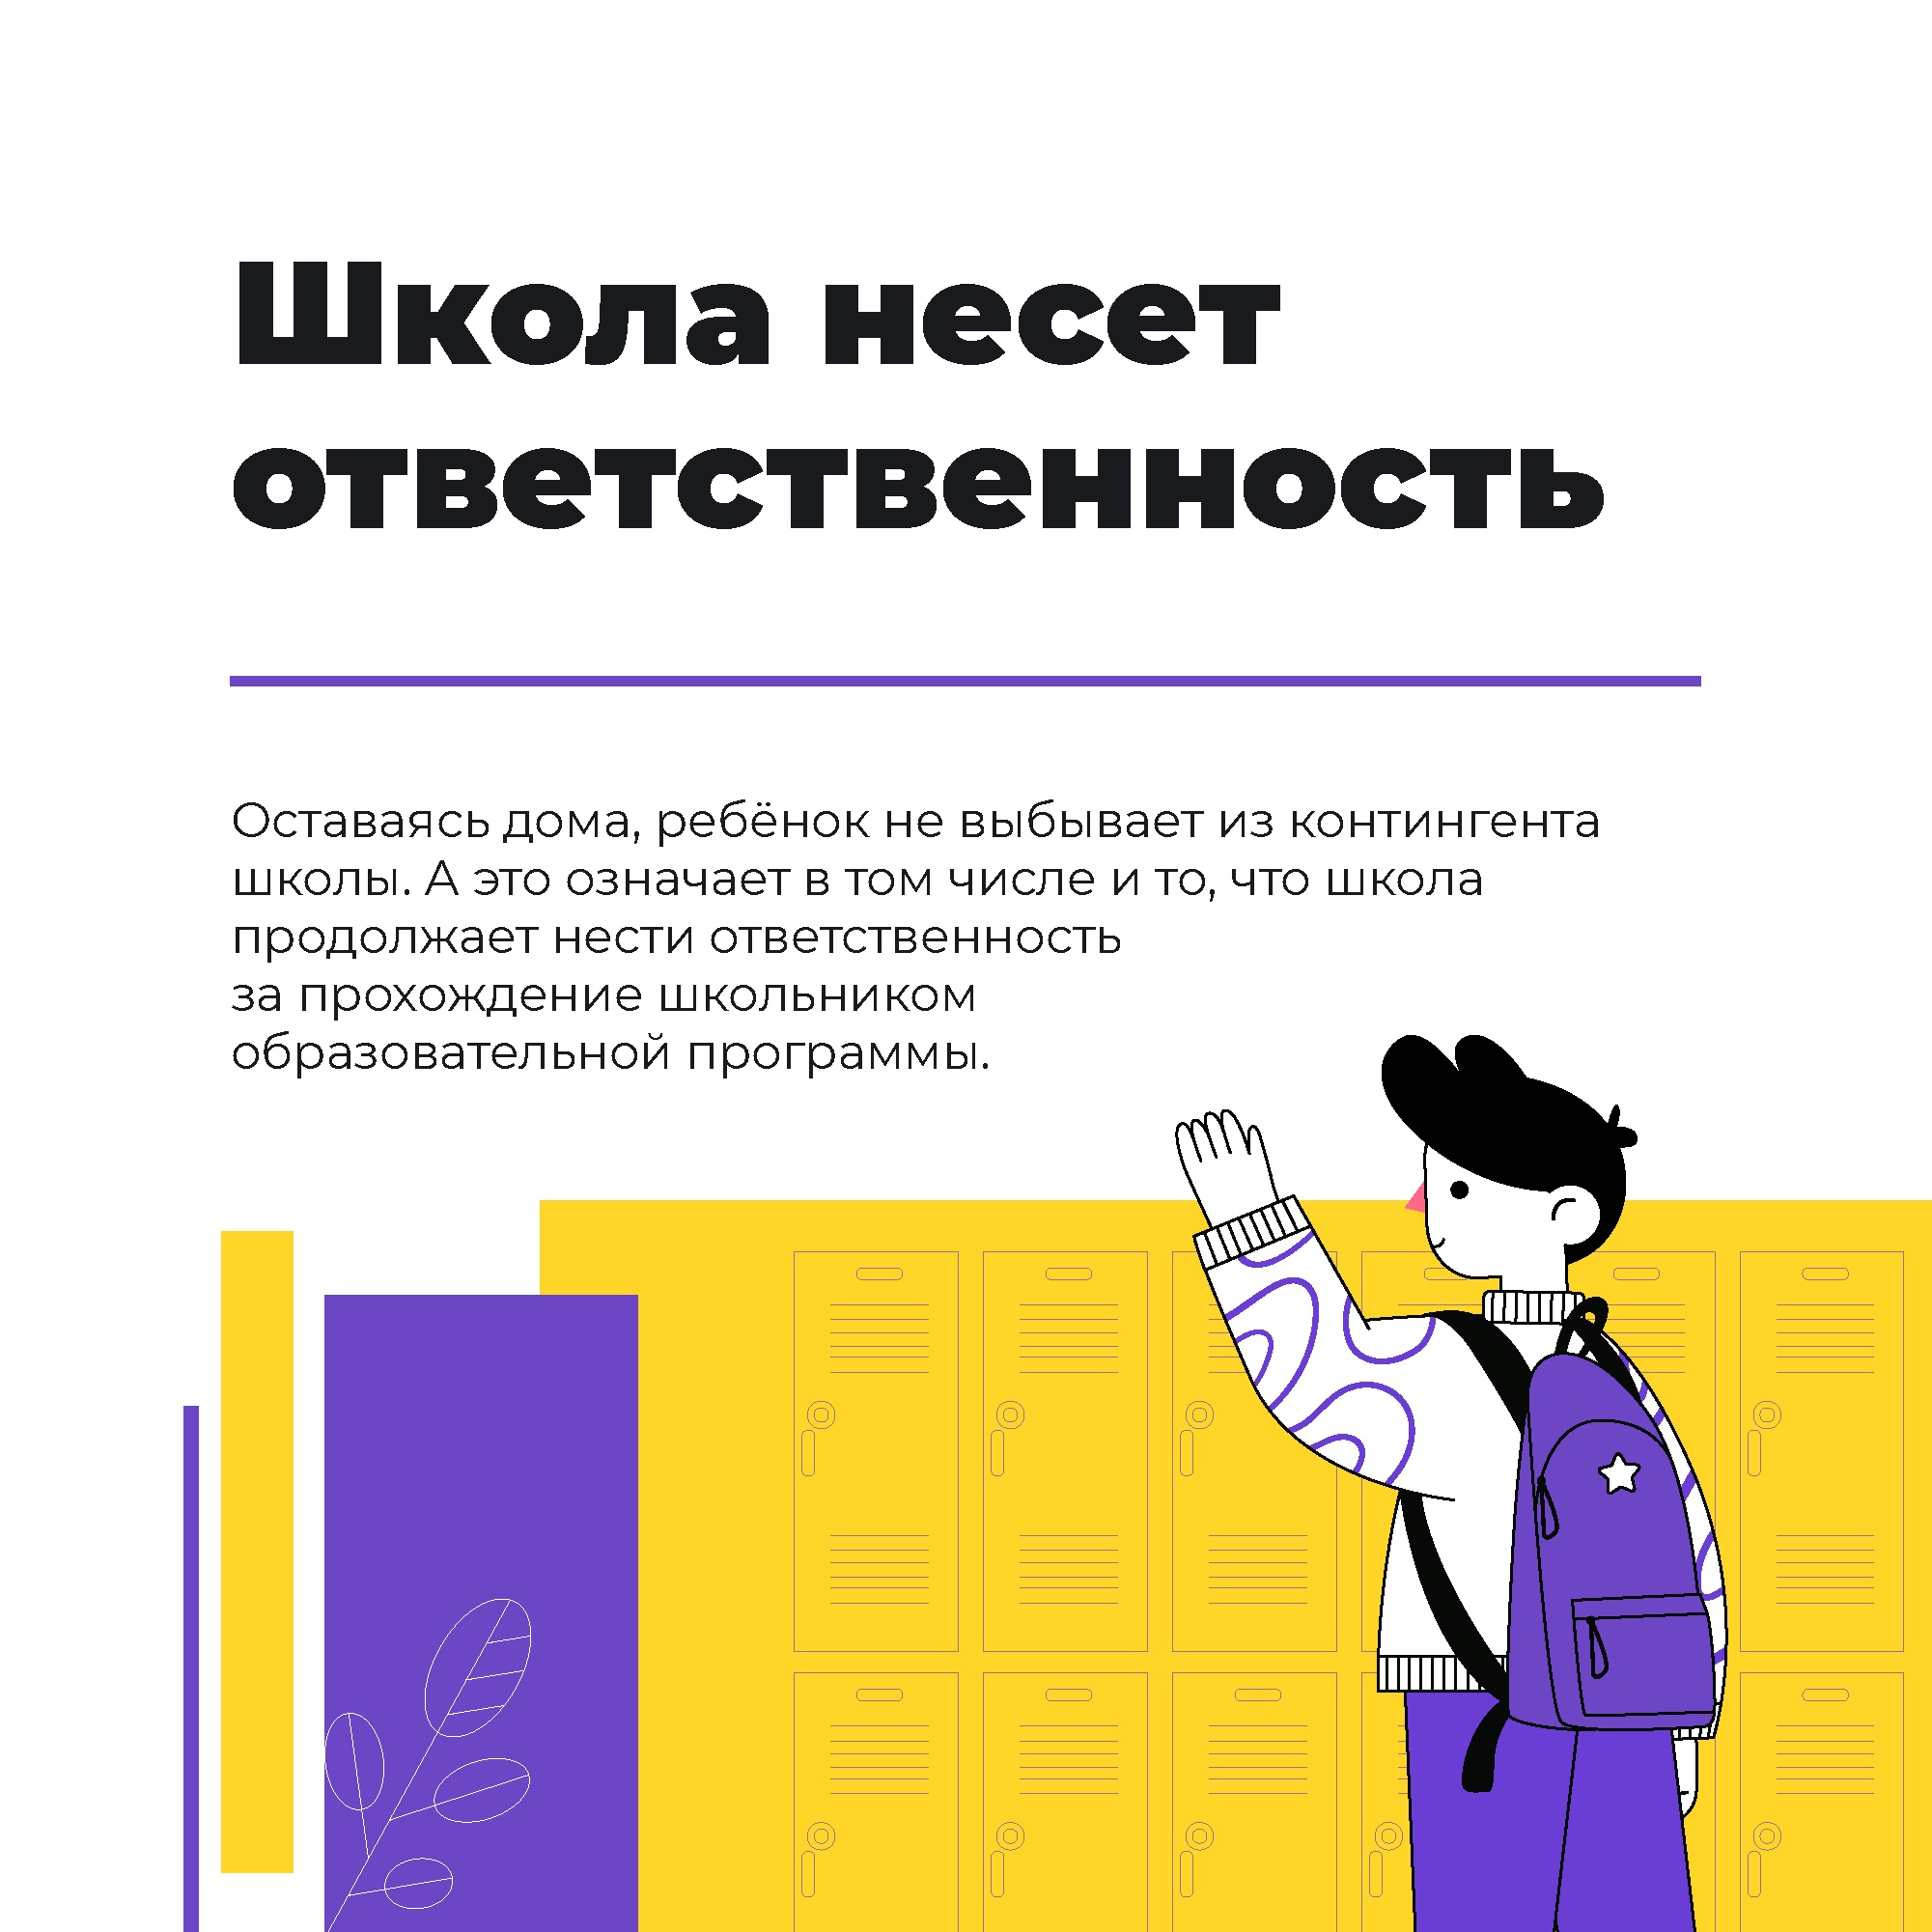 Иллюстрации: страница Ирины Потехиной в соцсети &laquo;ВКонтакте&raquo;